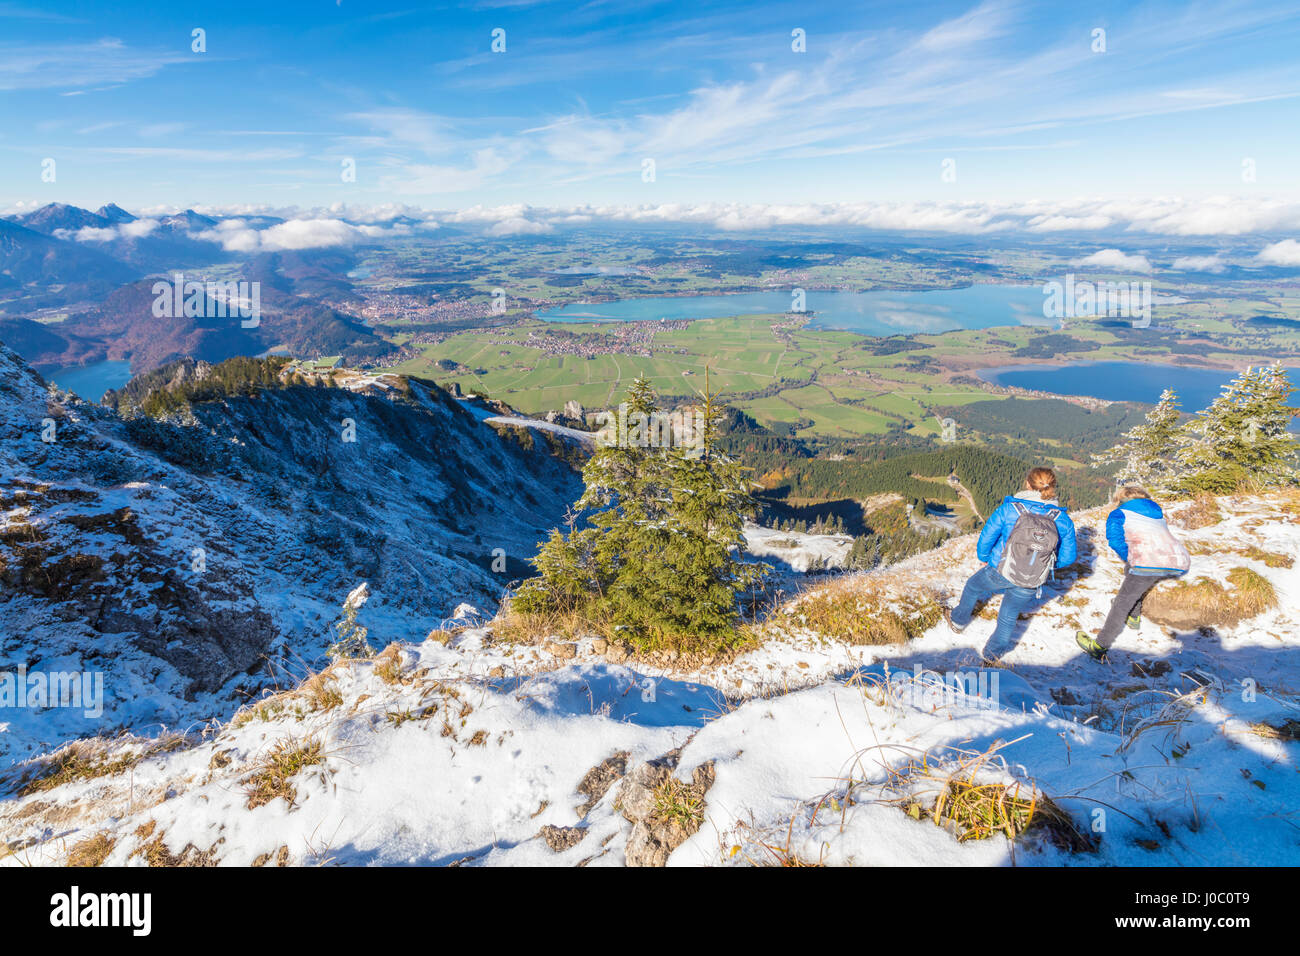 Gli escursionisti sulla ripida cresta ricoperta di neve nelle Alpi Ammergau, Tegelberg, Fussen, Baviera, Germania Foto Stock